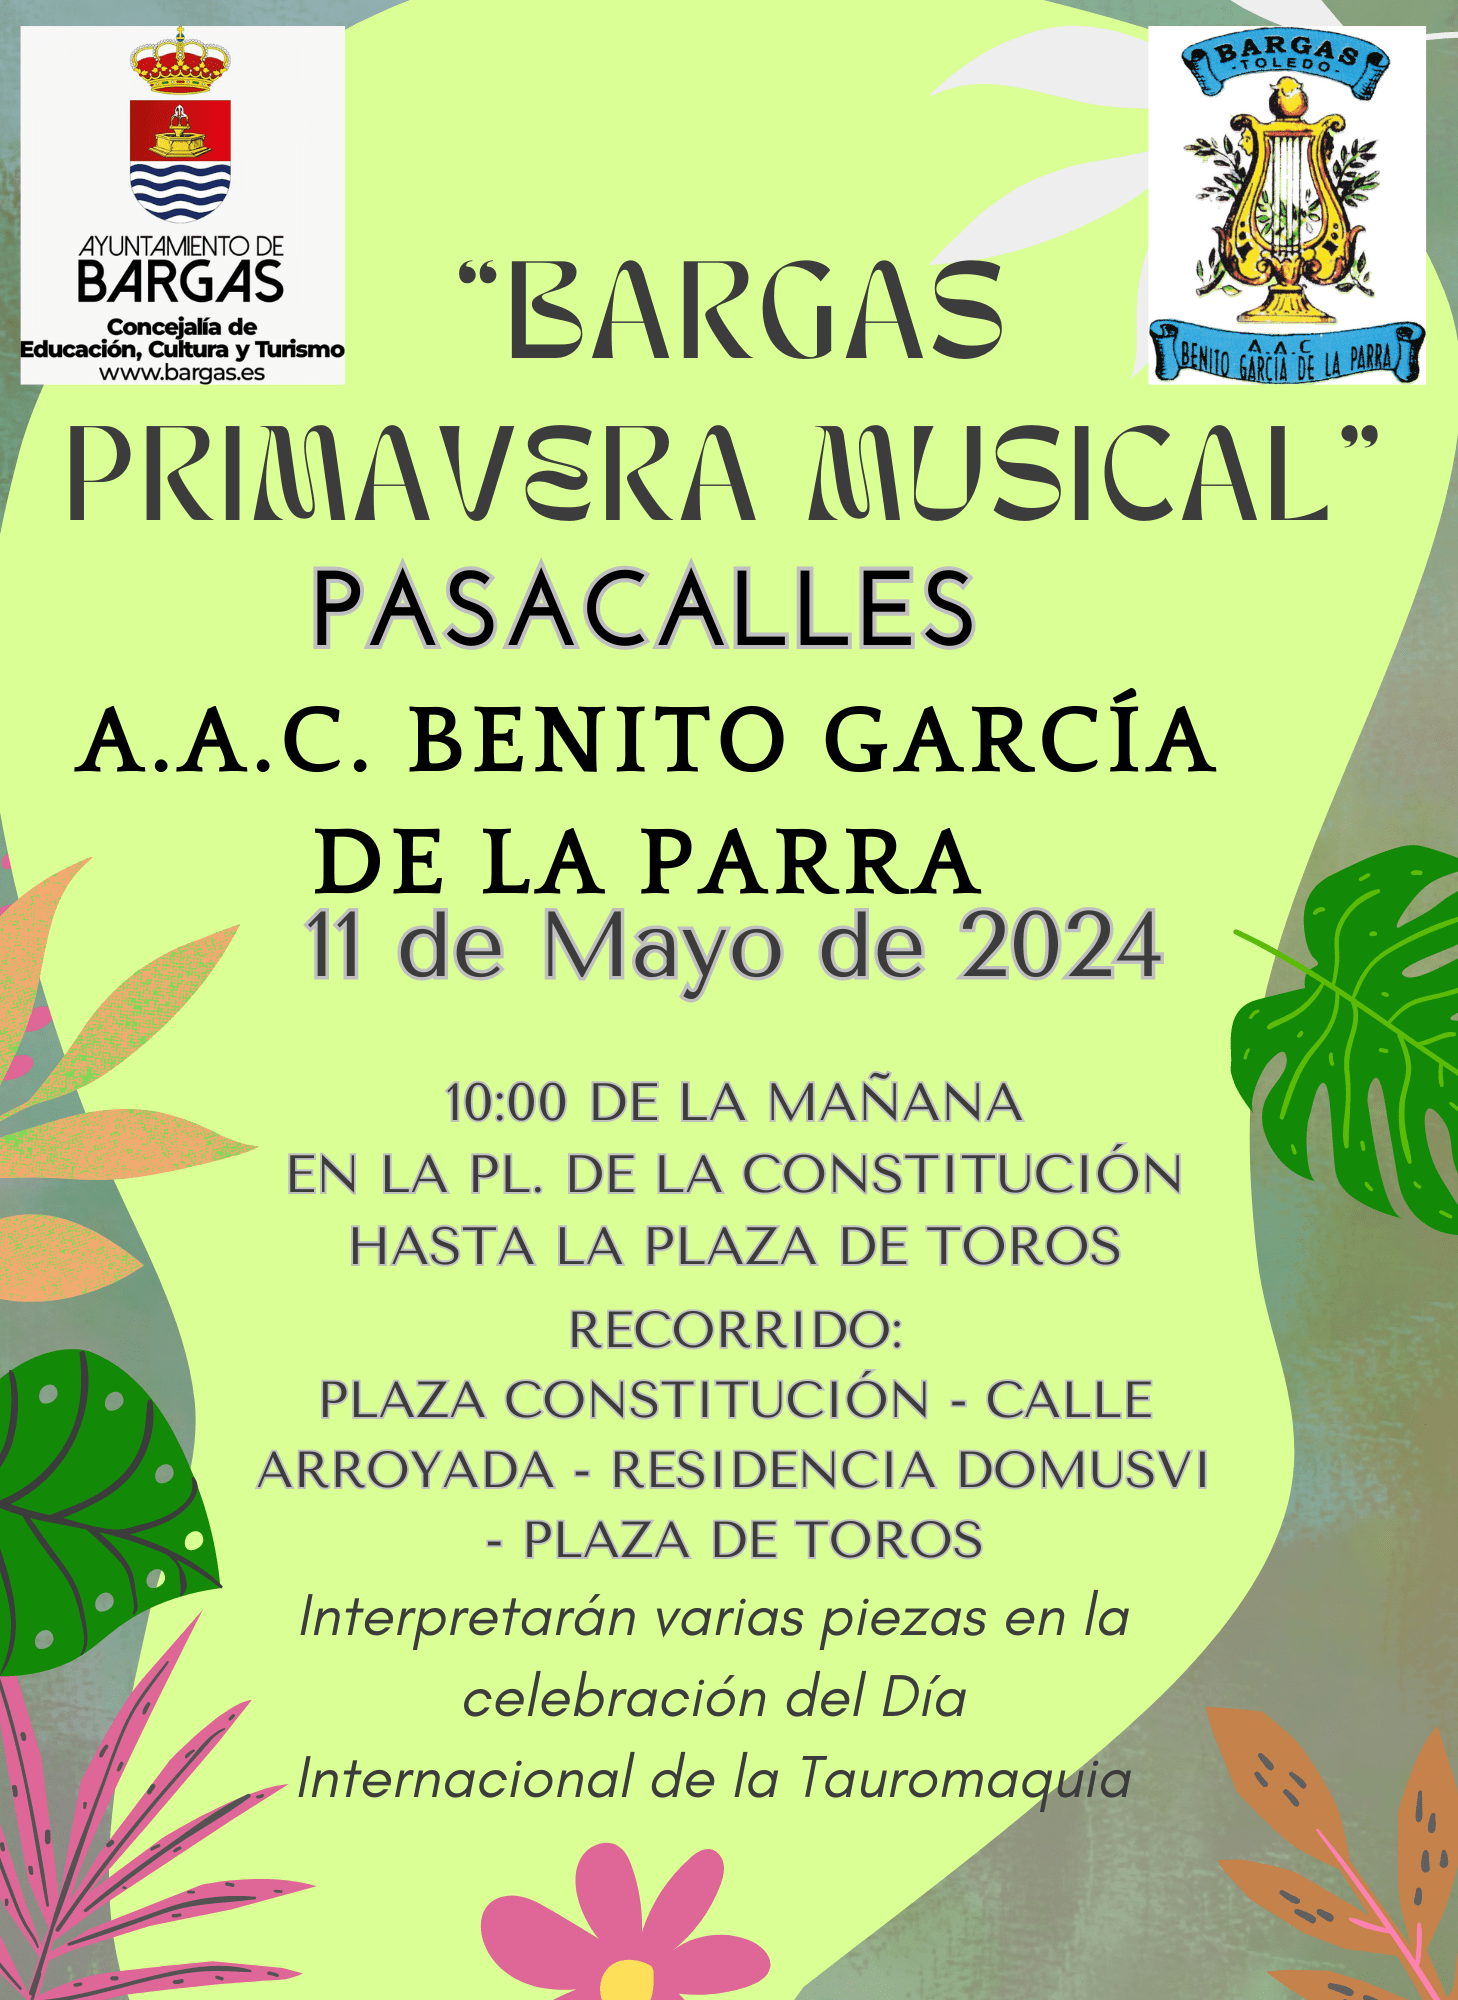 Pasacalles Bargas Primavera Musical 2024: A.A.C. «Benito García de la Parra»